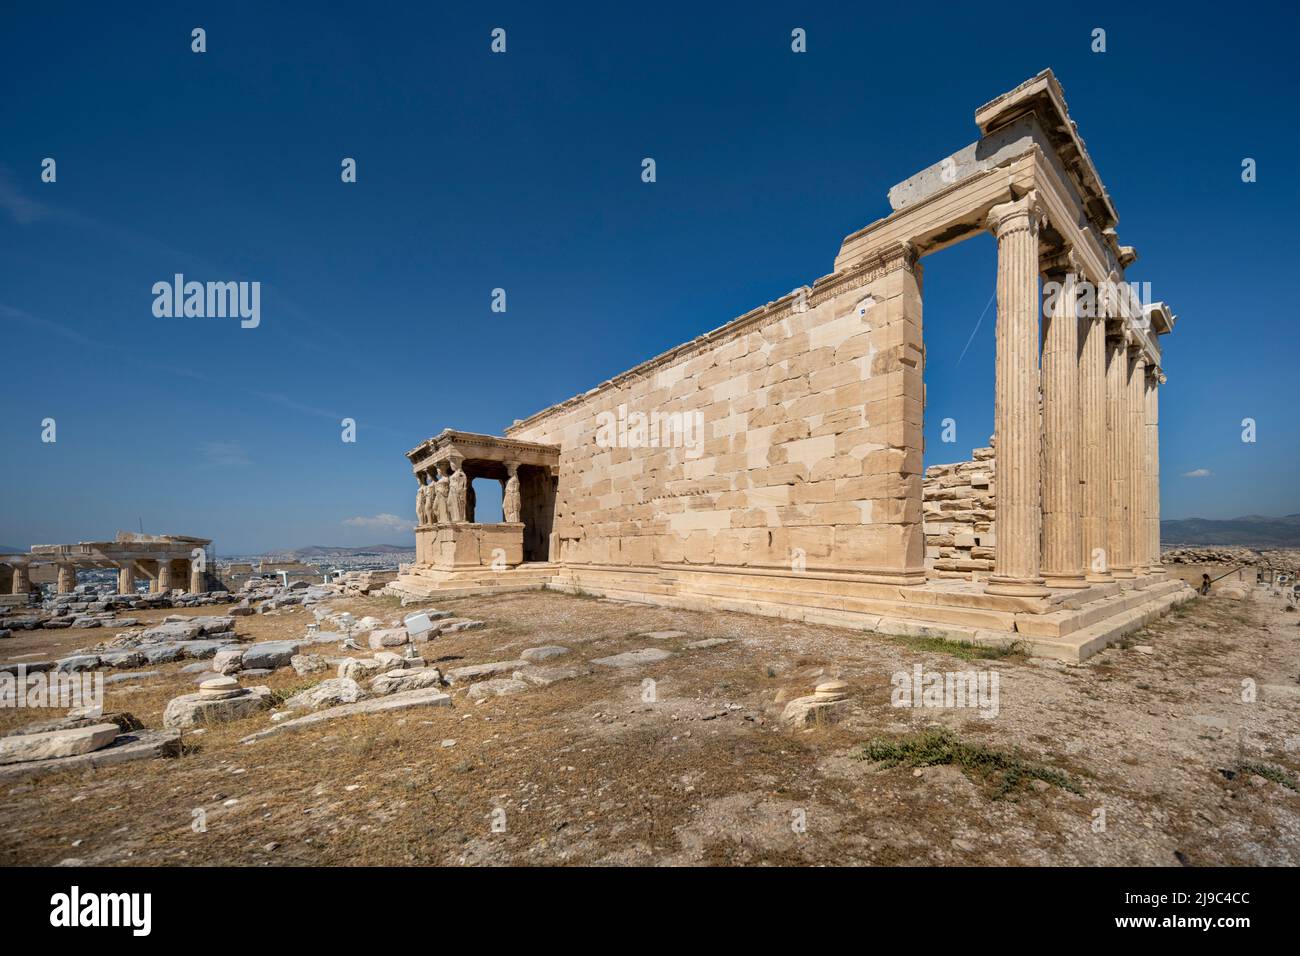 The Erechtheion on the Acropolis. Stock Photo